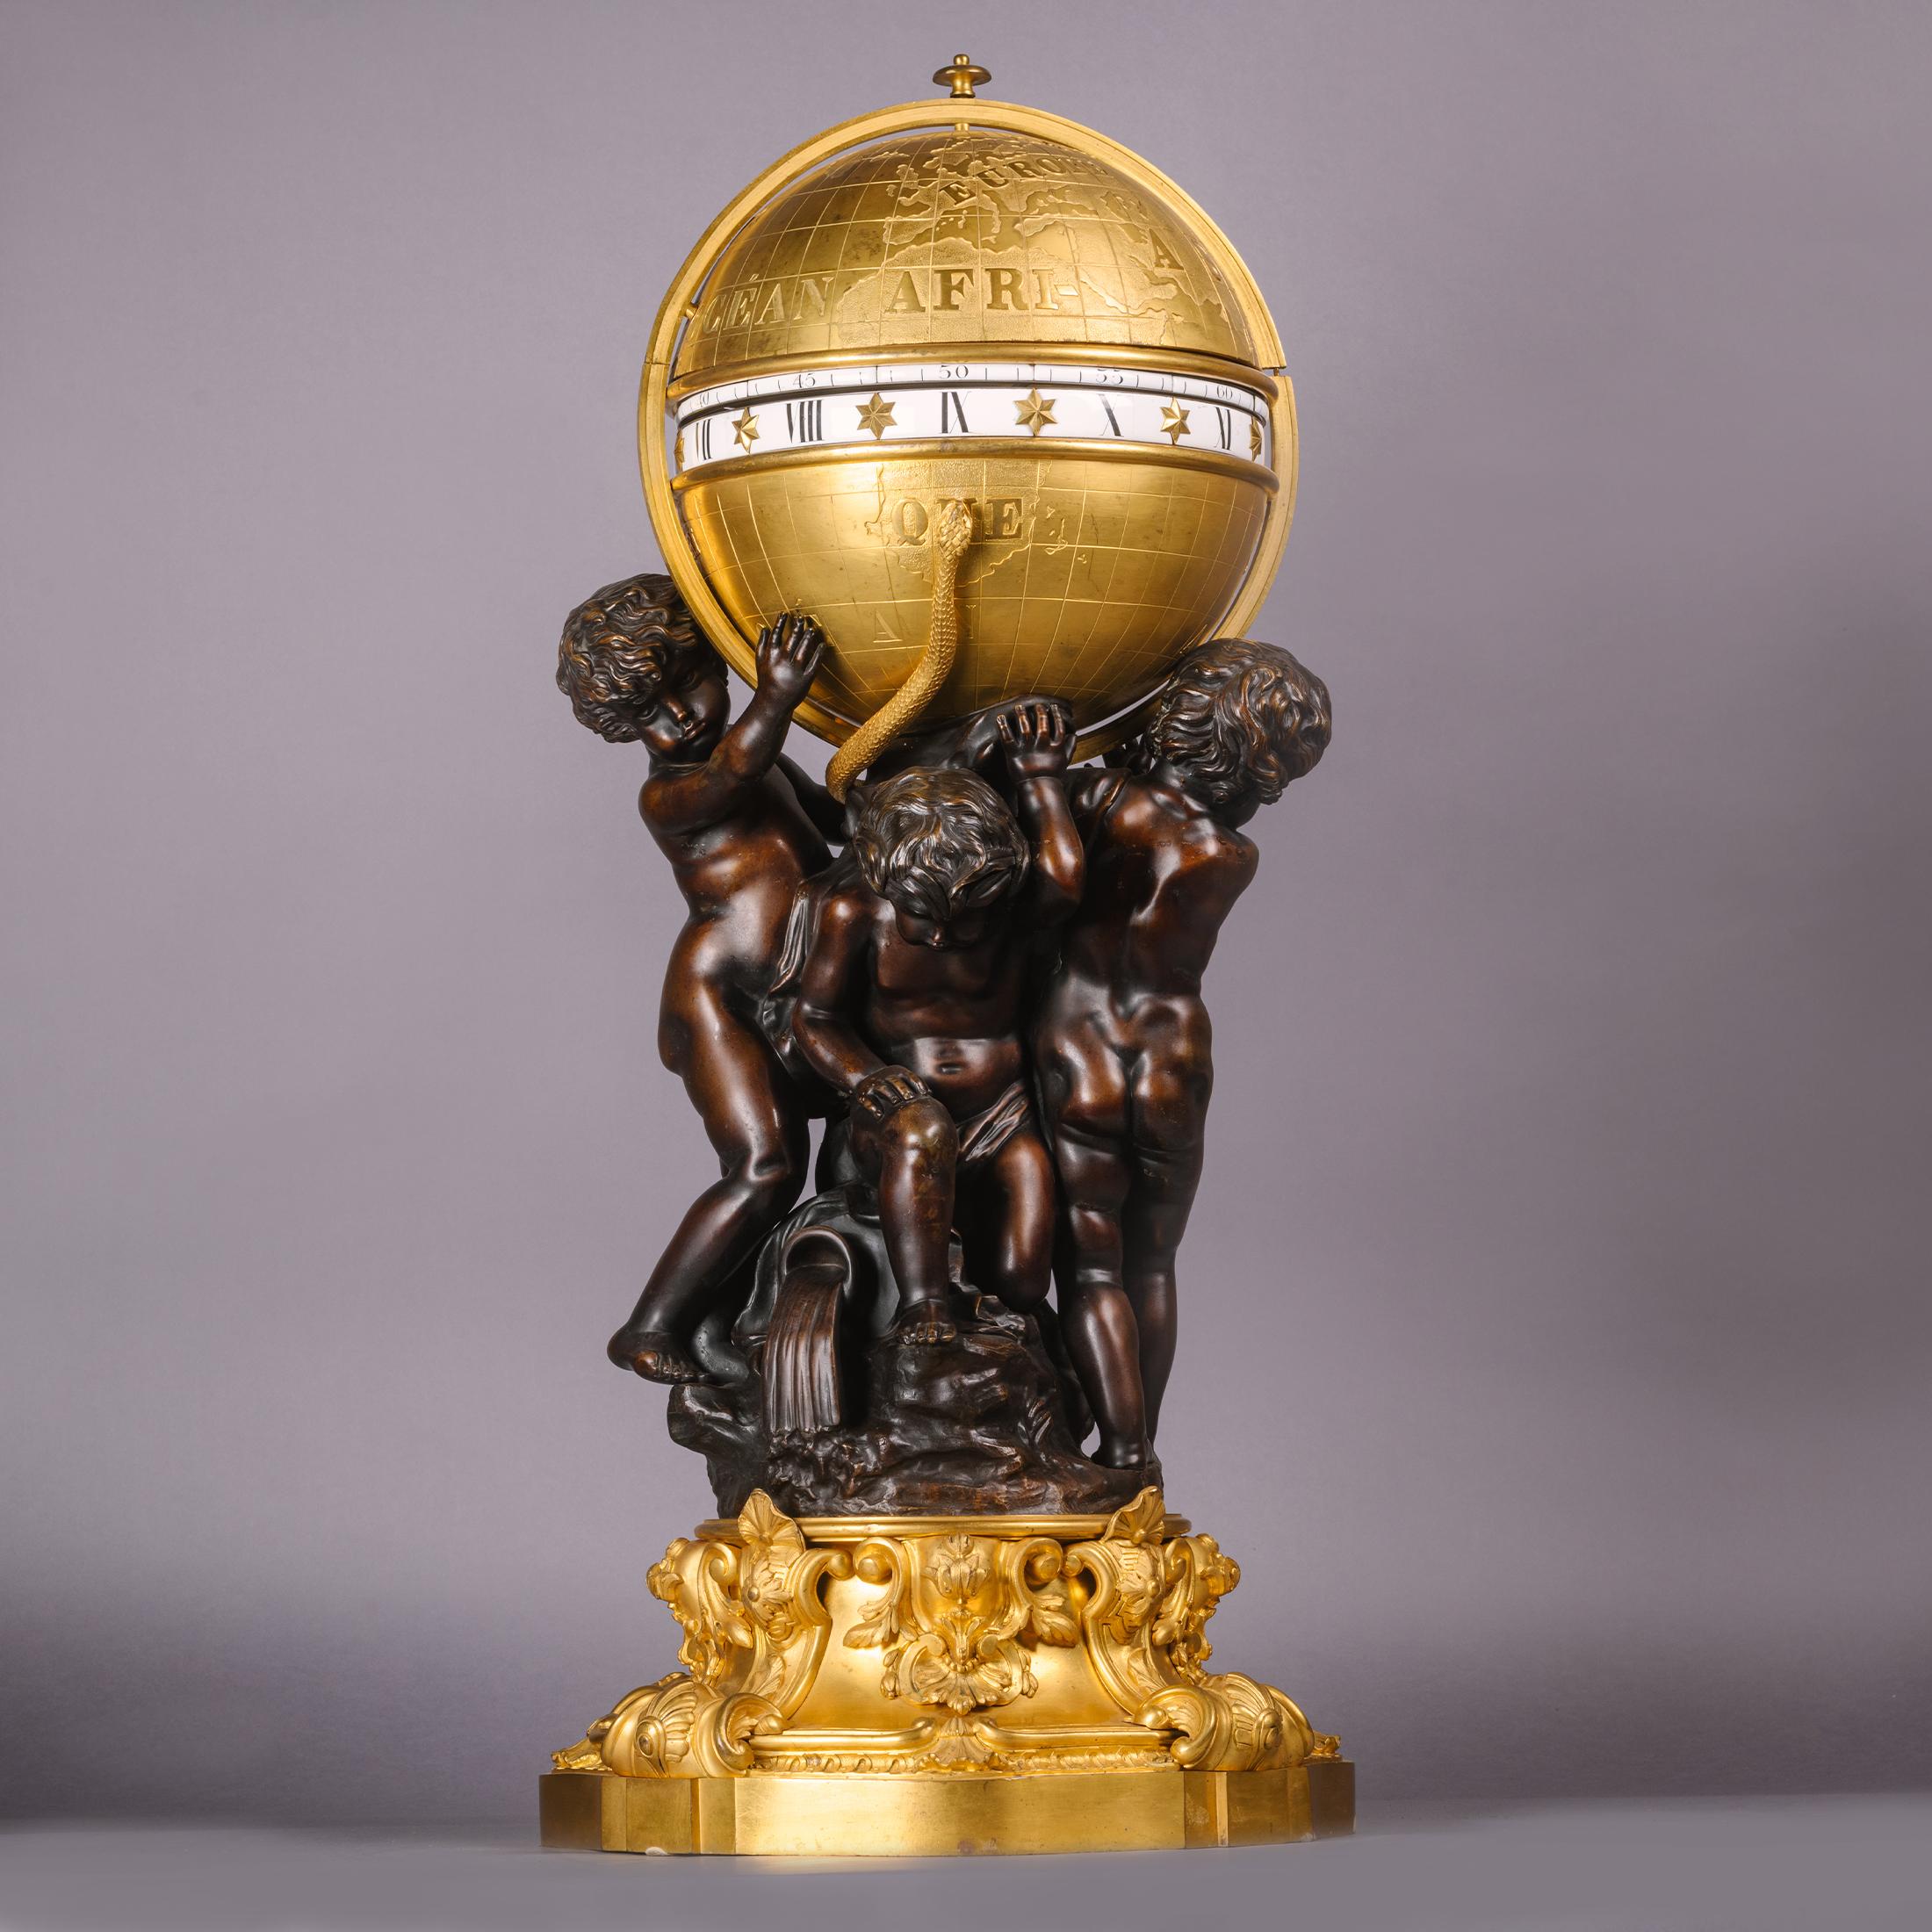 Eine seltene und außergewöhnliche vergoldete und patinierte Bronze Monumental Cercles Tournants Uhr Garnitur, von Deniere, Paris. 

Die Rückplatte ist mit 